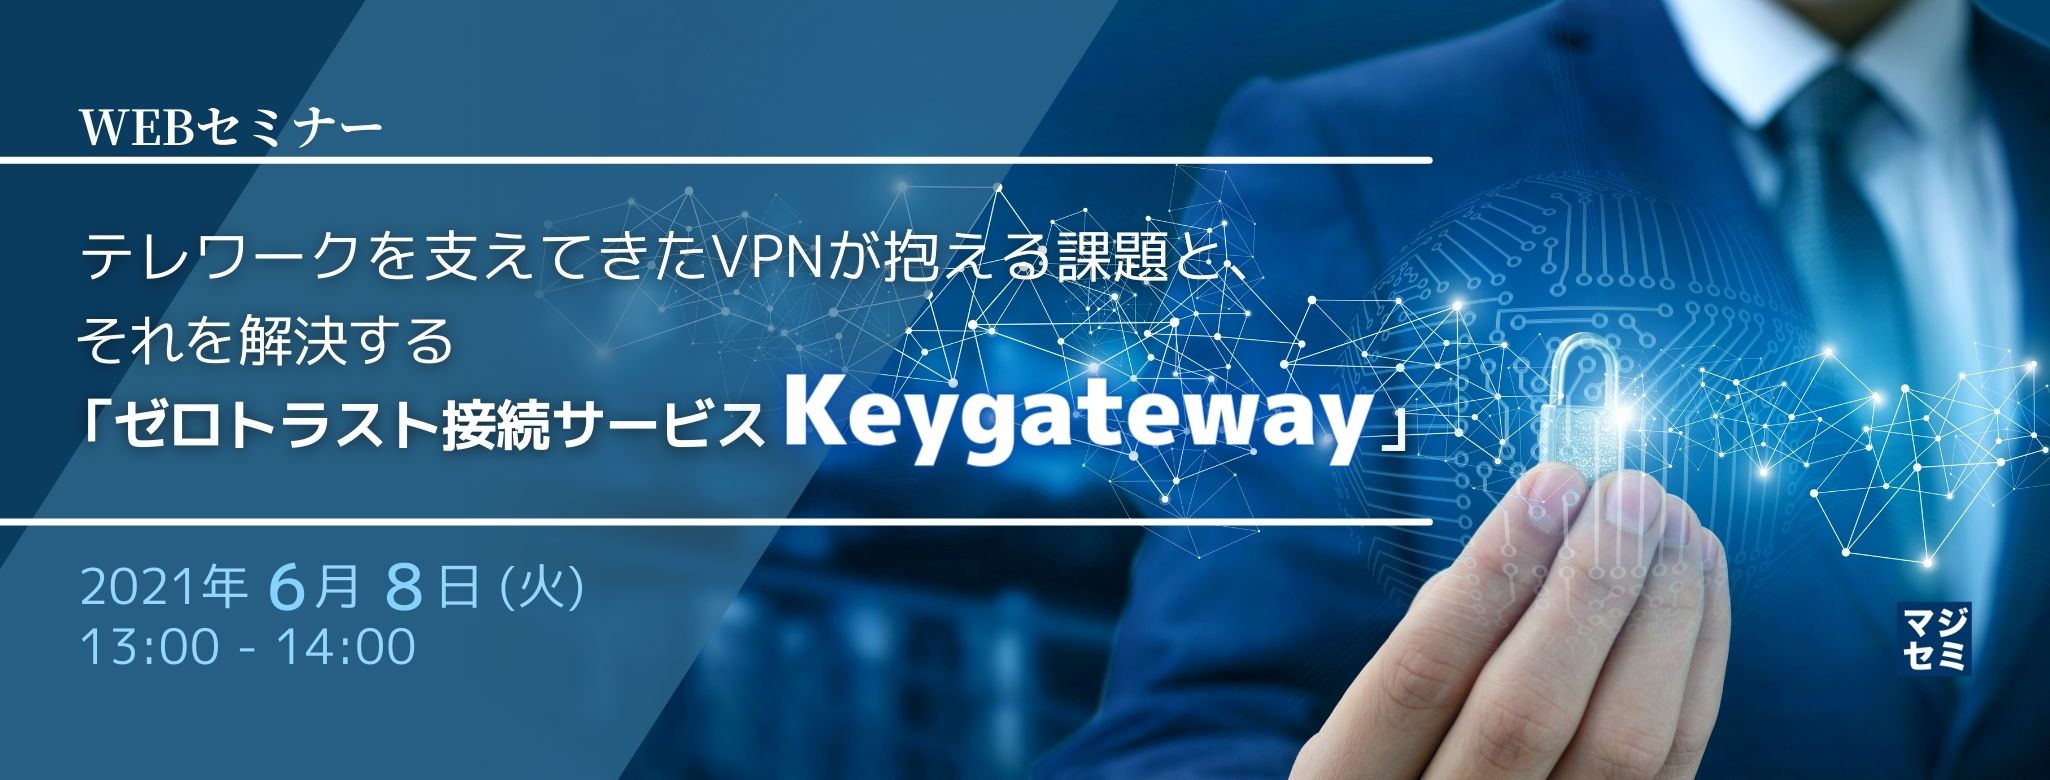  テレワークを支えてきたVPNが抱える課題と、それを解決する「ゼロトラスト接続サービス Keygateway」 